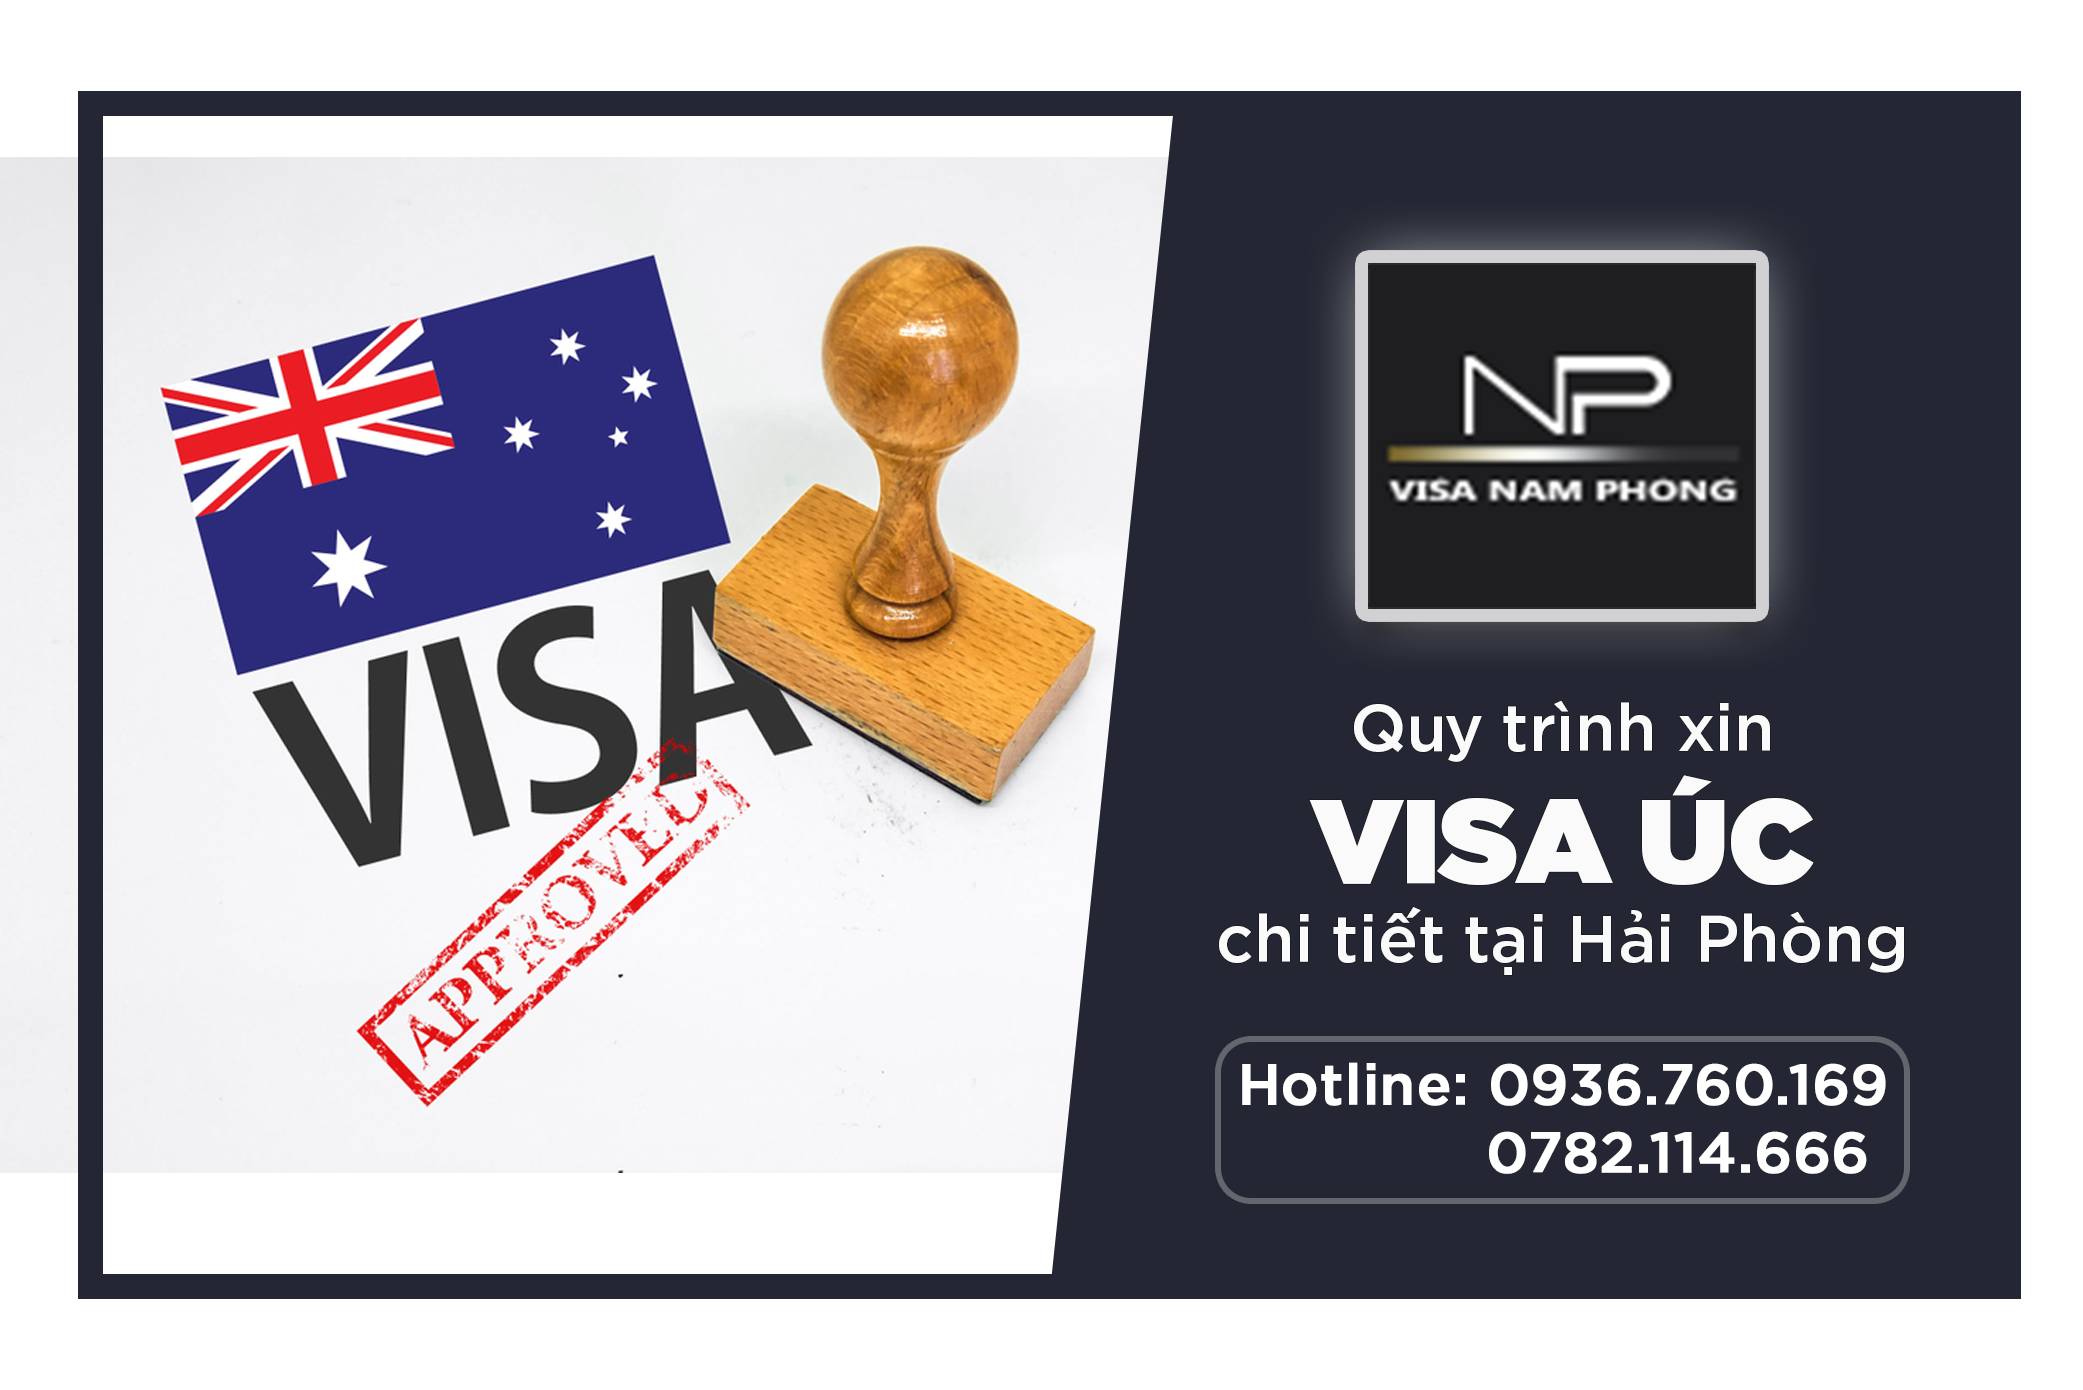 Quy trình xin visa visa Úc chi tiết tại Hải Phòng